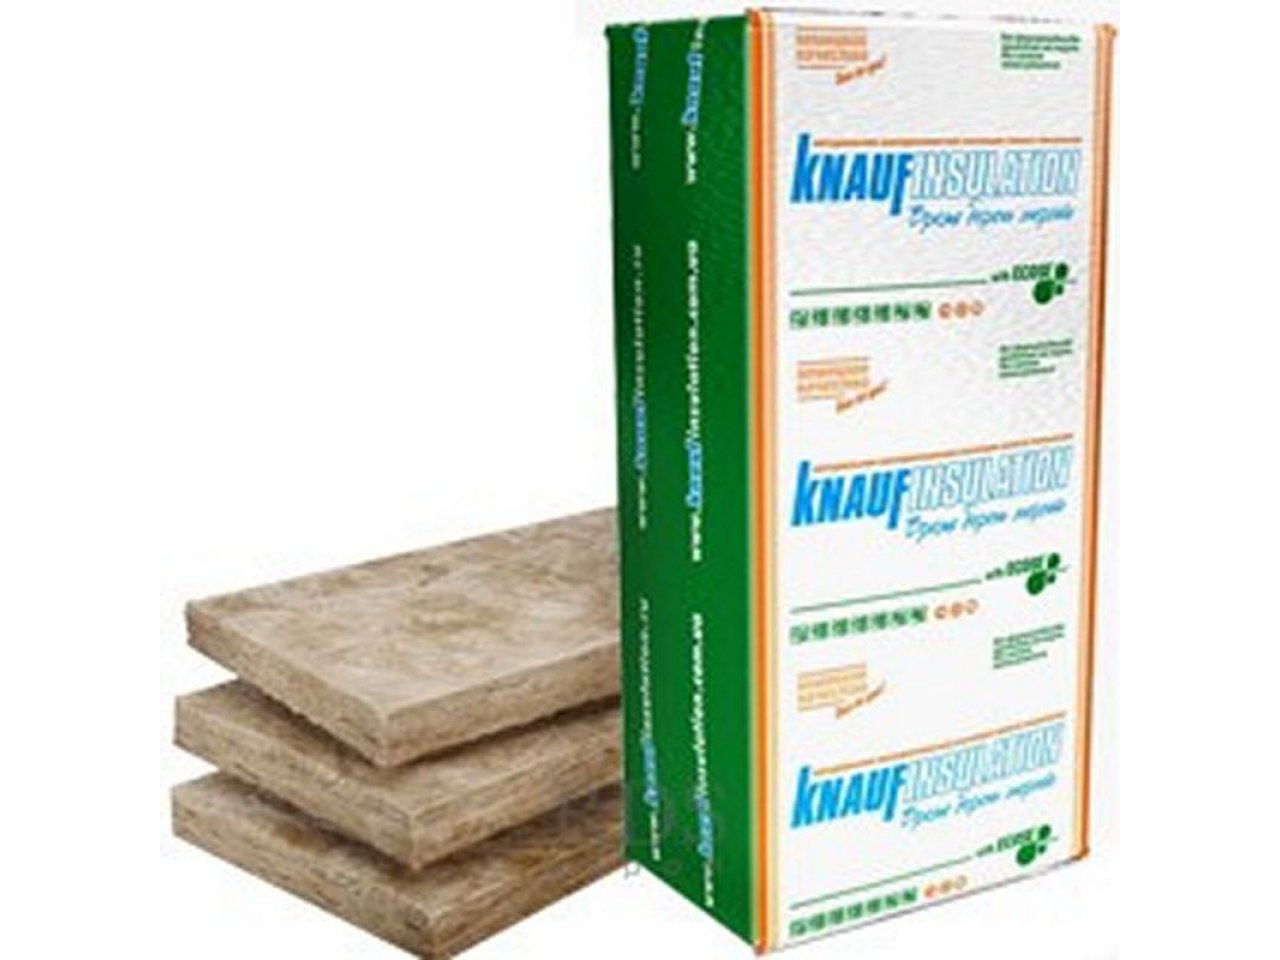 Утеплители knauf: рулонный материал для стен и плиты, технические характеристики теплоизоляции, «теплоknauf коттедж» и «акустик», отзывы потребителей